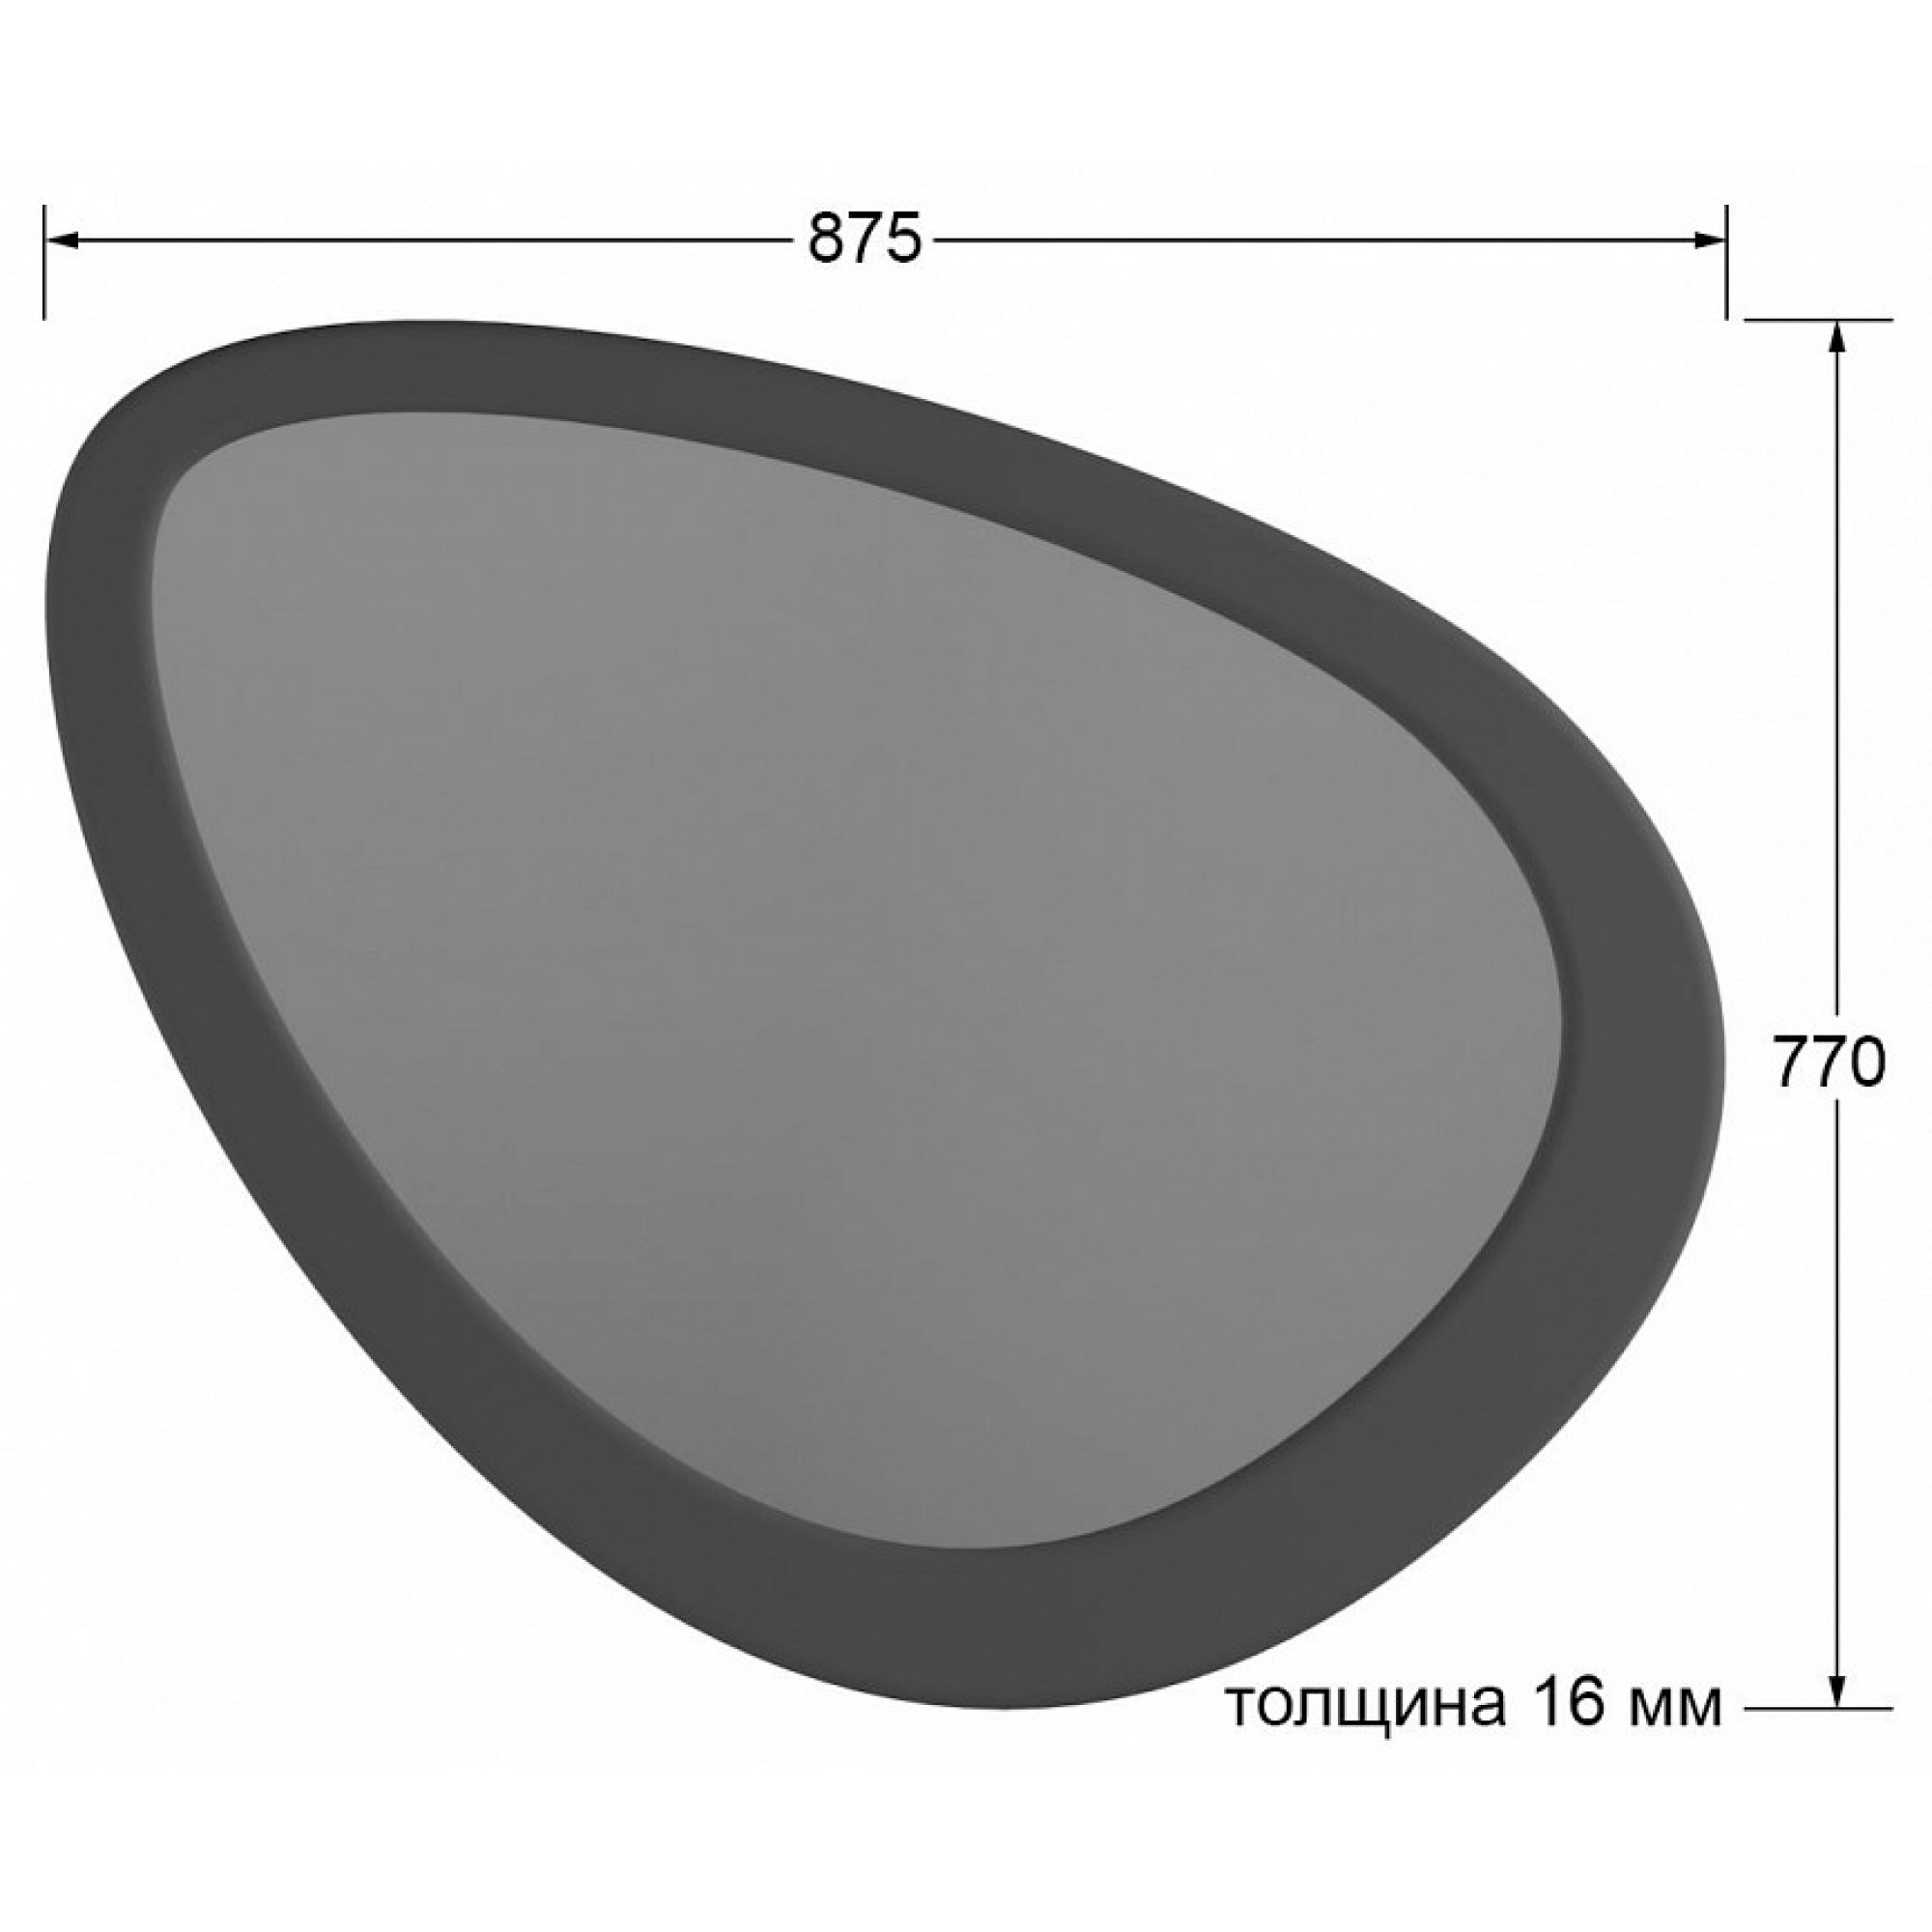 Зеркало настенное Телфорд вью серый 875x770x16(KLF_9348732902)